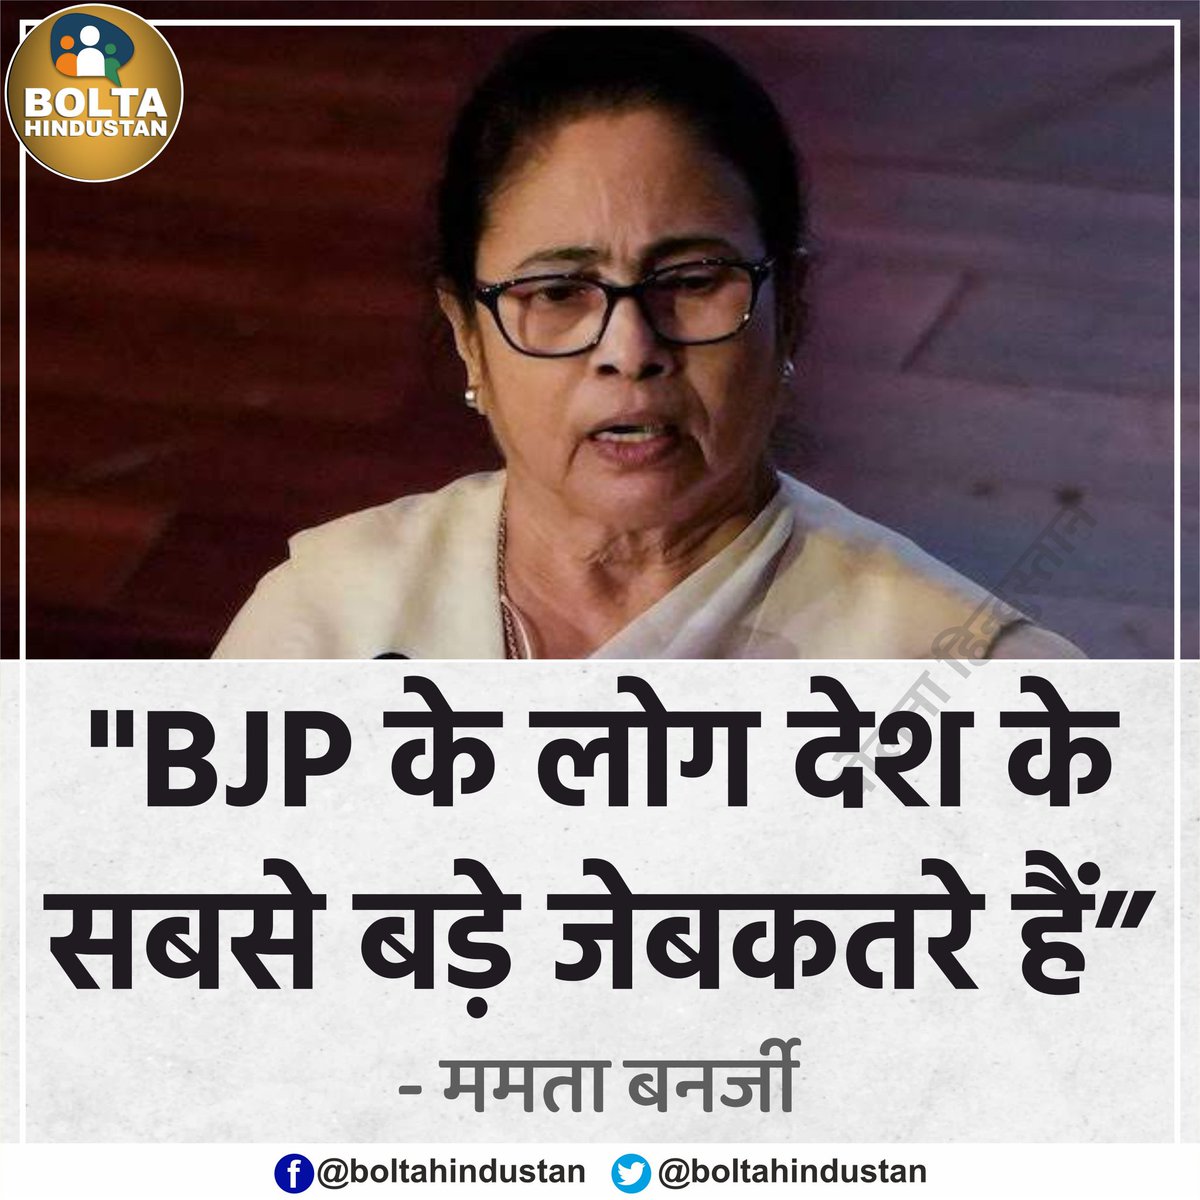 देश के सबसे बड़े 'जेबकतरे' BJP के लोग हैं : ममता बनर्जी, मुख्यमंत्री